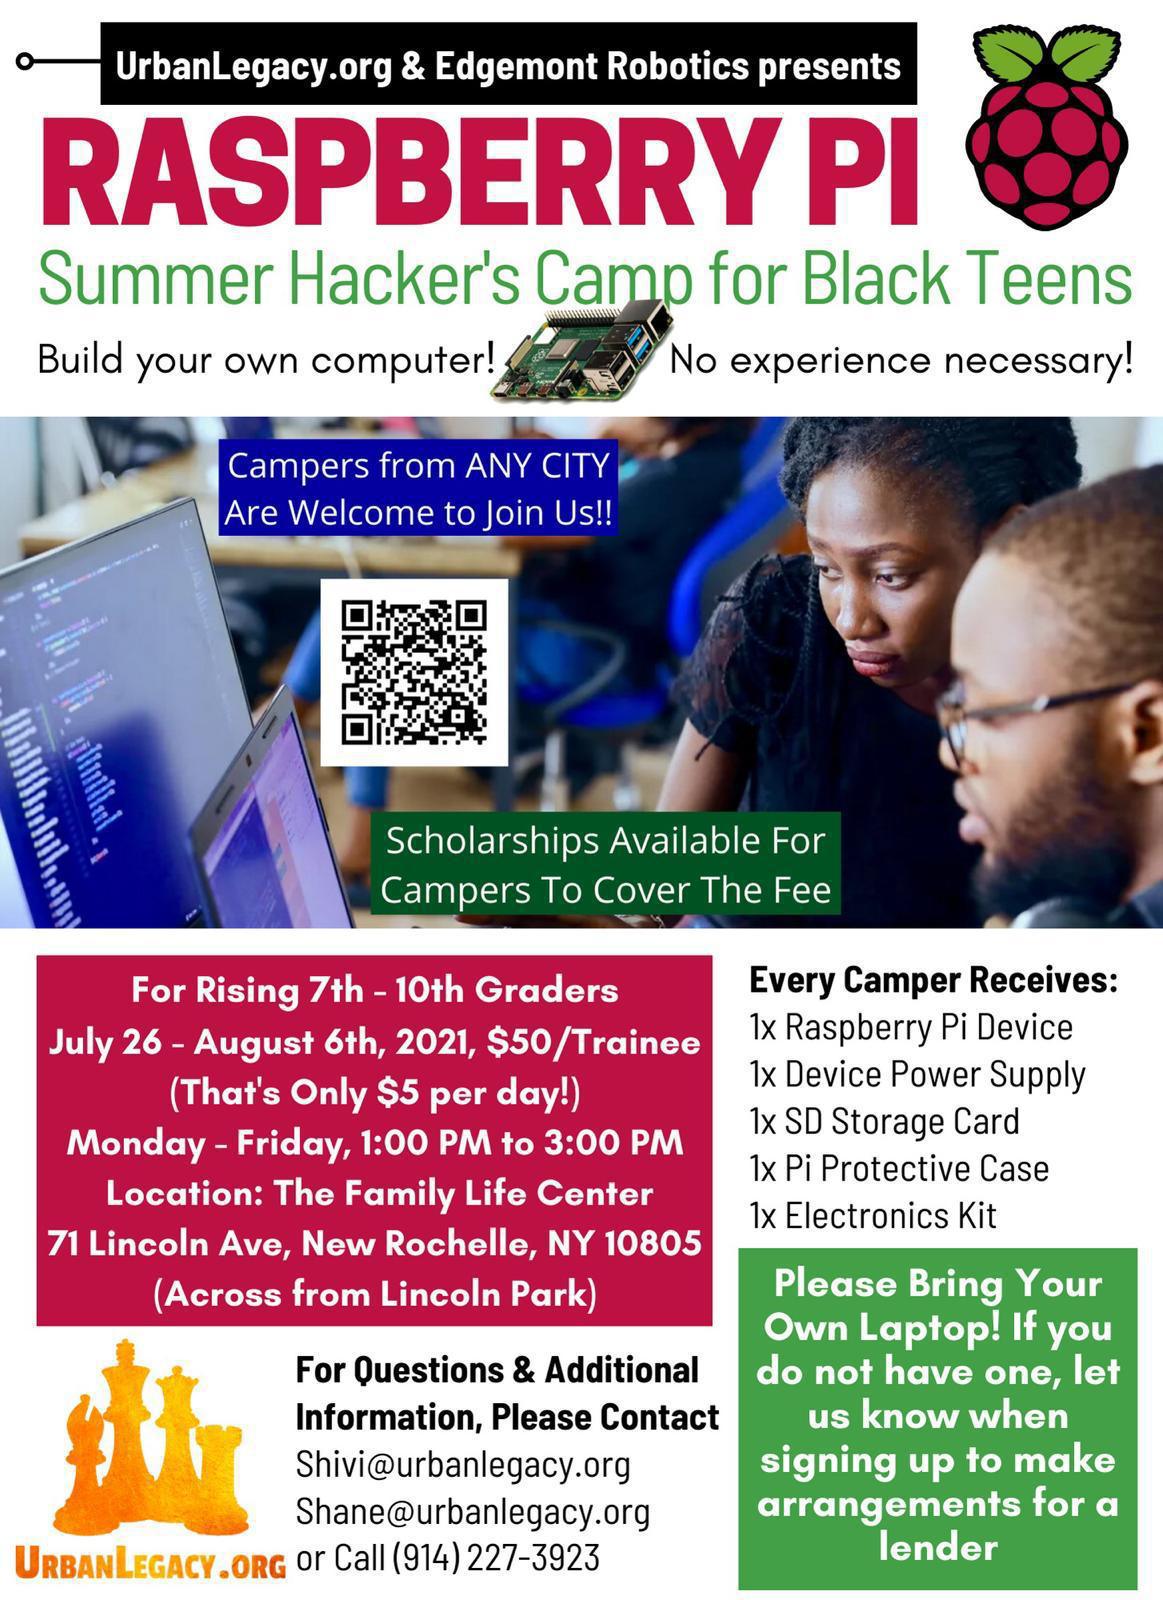 Summer STEM Hacker Camp for Black Teens in Westchester